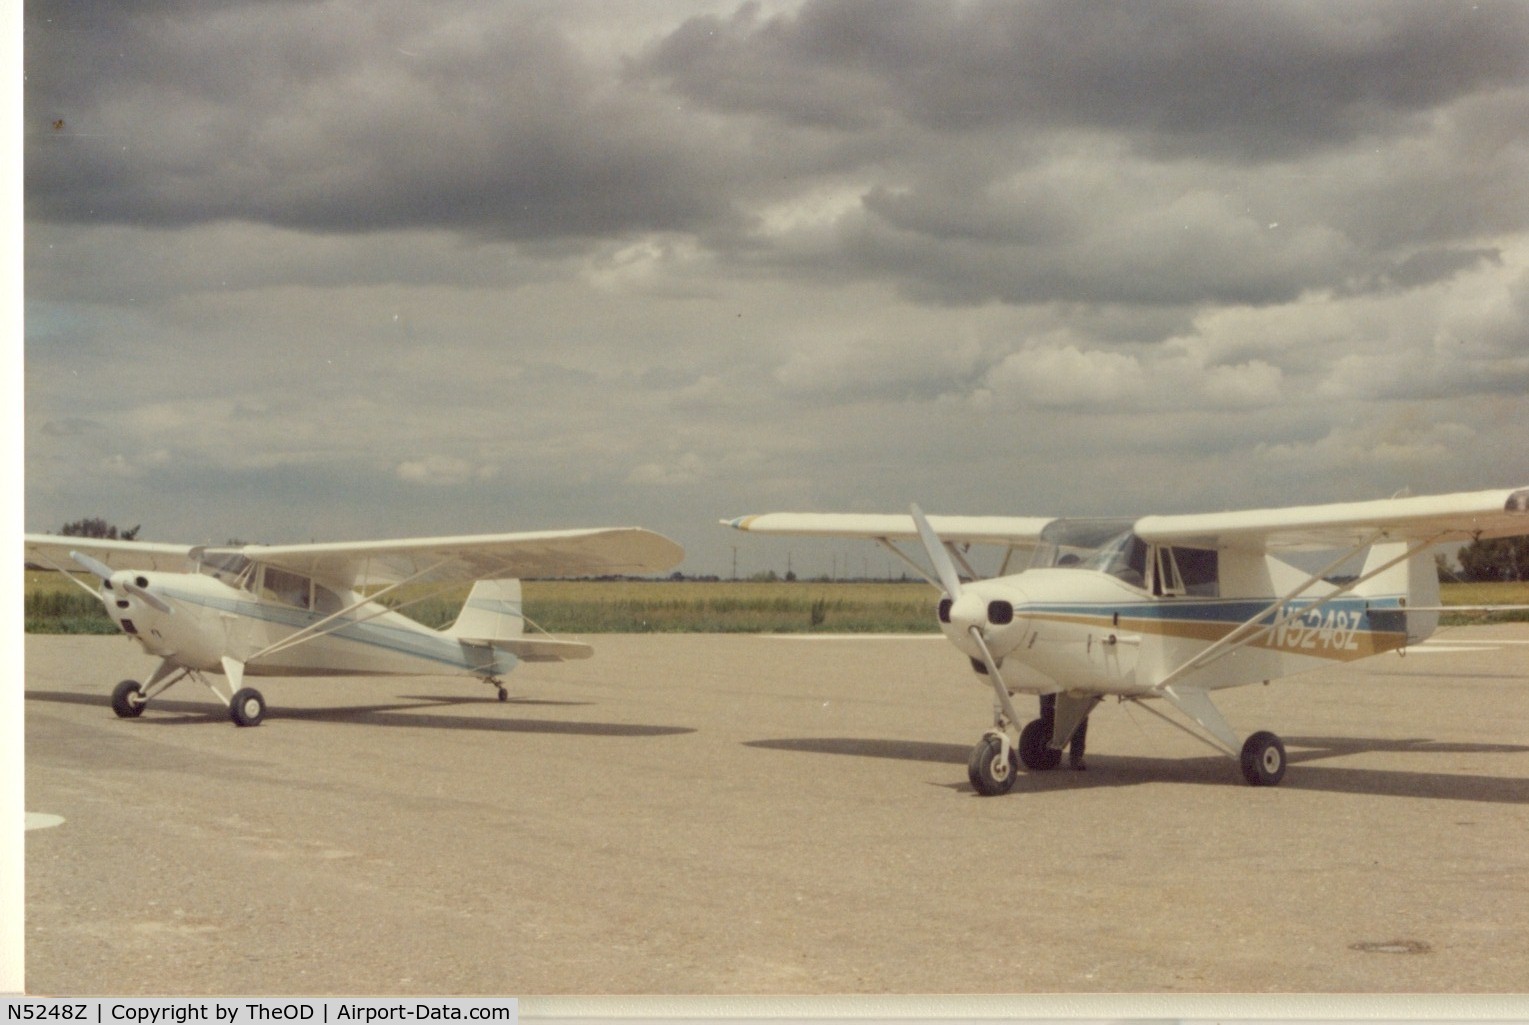 N5248Z, 1961 Piper PA-22-108 Colt C/N 22-8931, Taken @ Fremont airport.